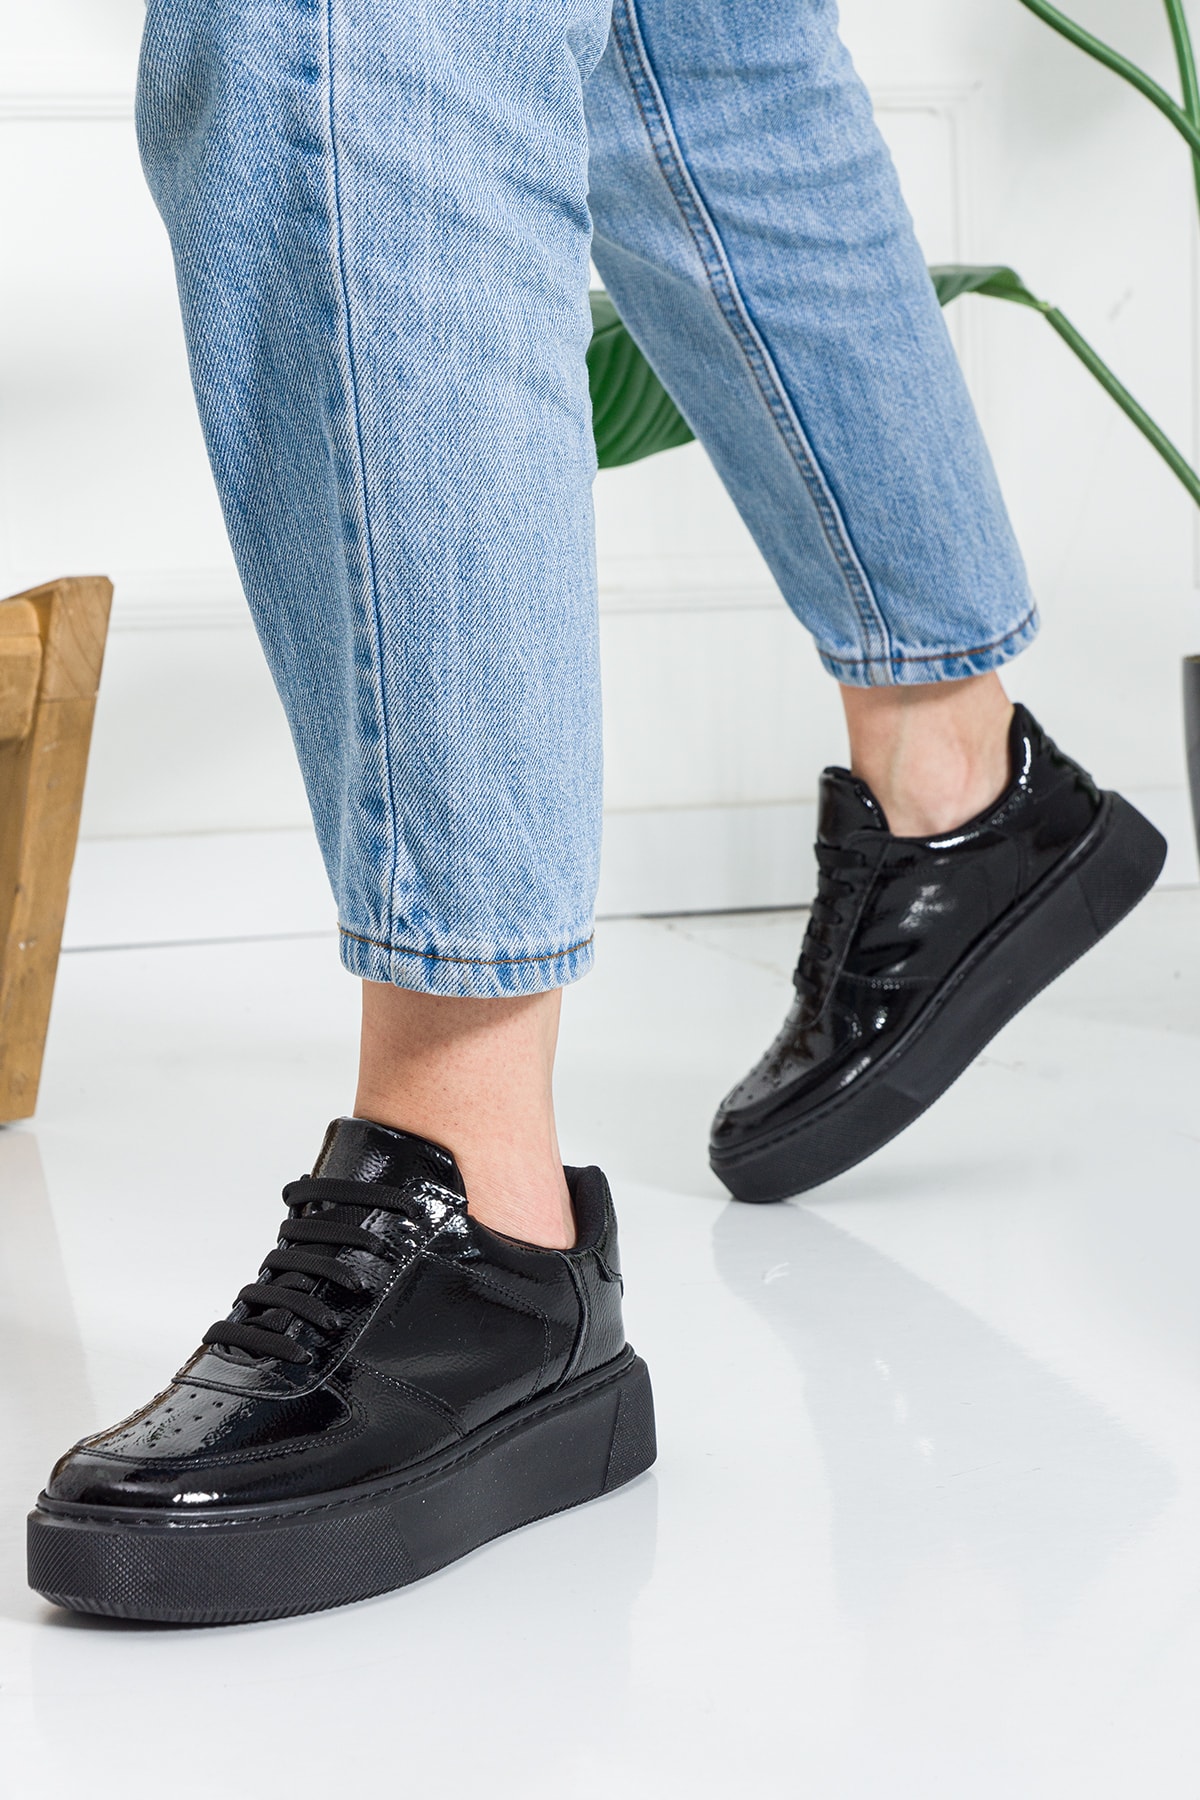 Ayax Siyah Rugan Düz Hafif Dikişli Taban Bağcıklı Günlük Ortapedik Iç Taban Kadın Sneaker GU11165